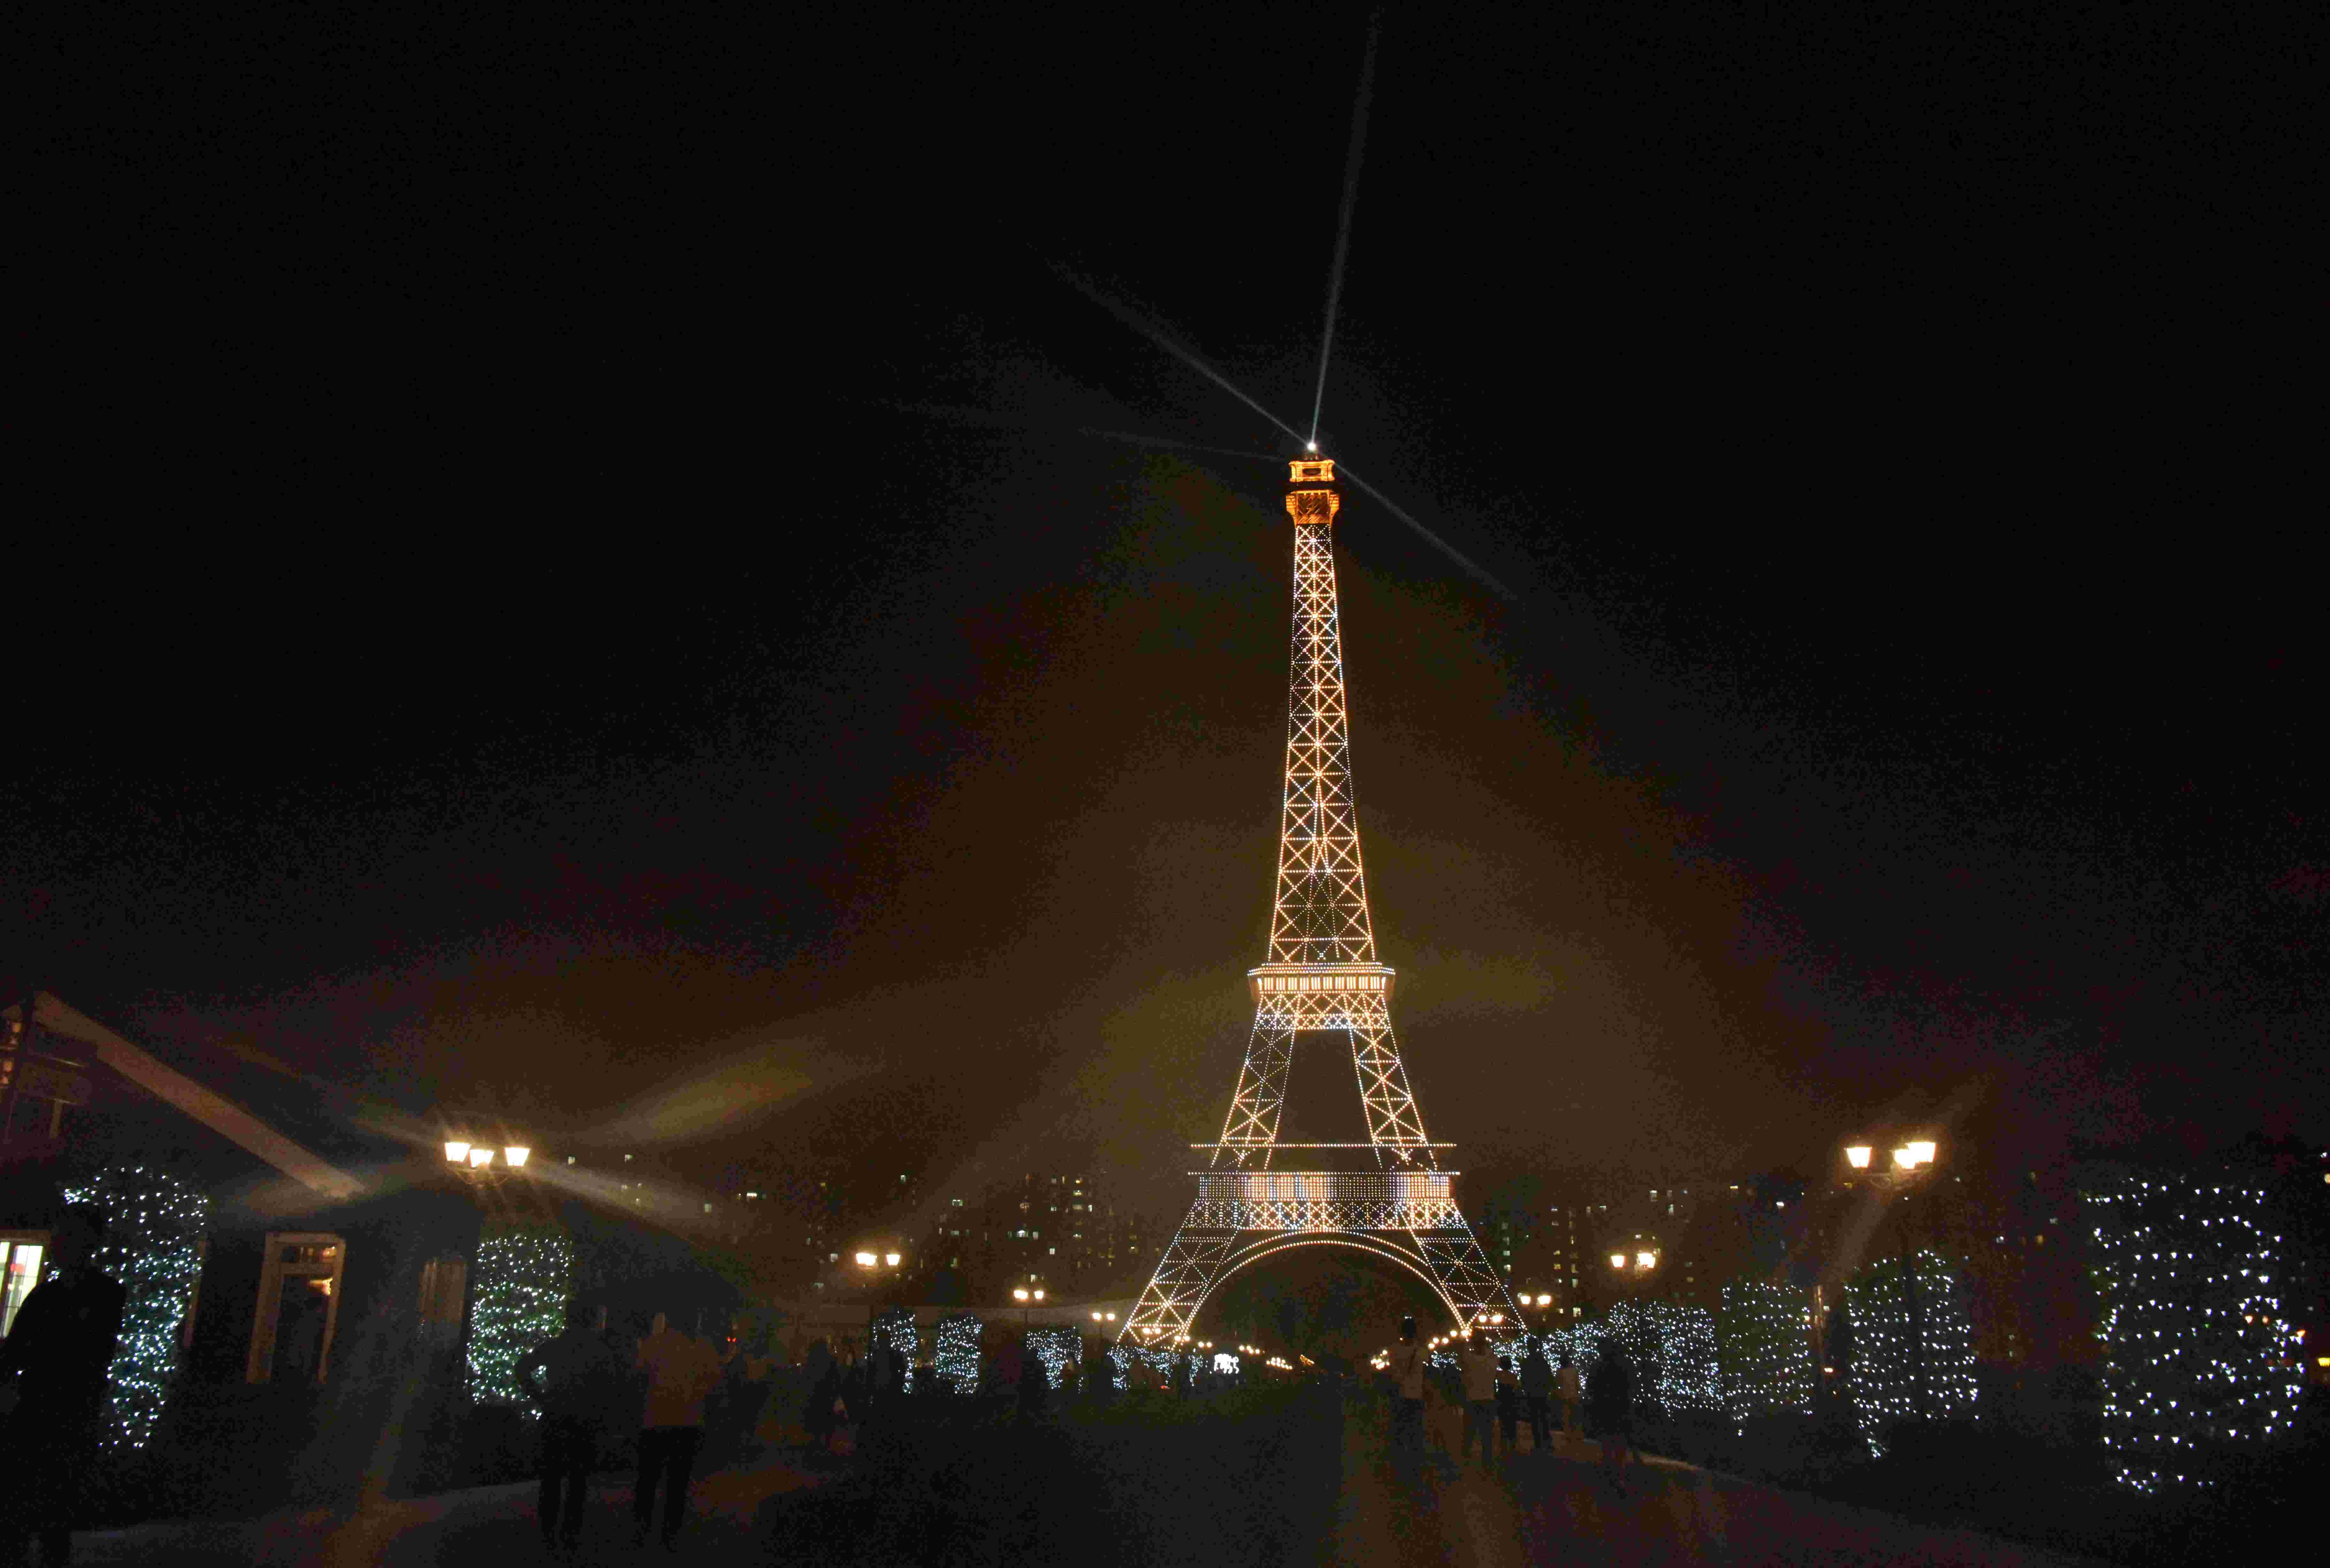 Eine halb so große Kopie des Eiffelturms wird in Tianducheng beleuchtet, einer kleinen chinesischen Gemeinde, die Paris nachbildet.